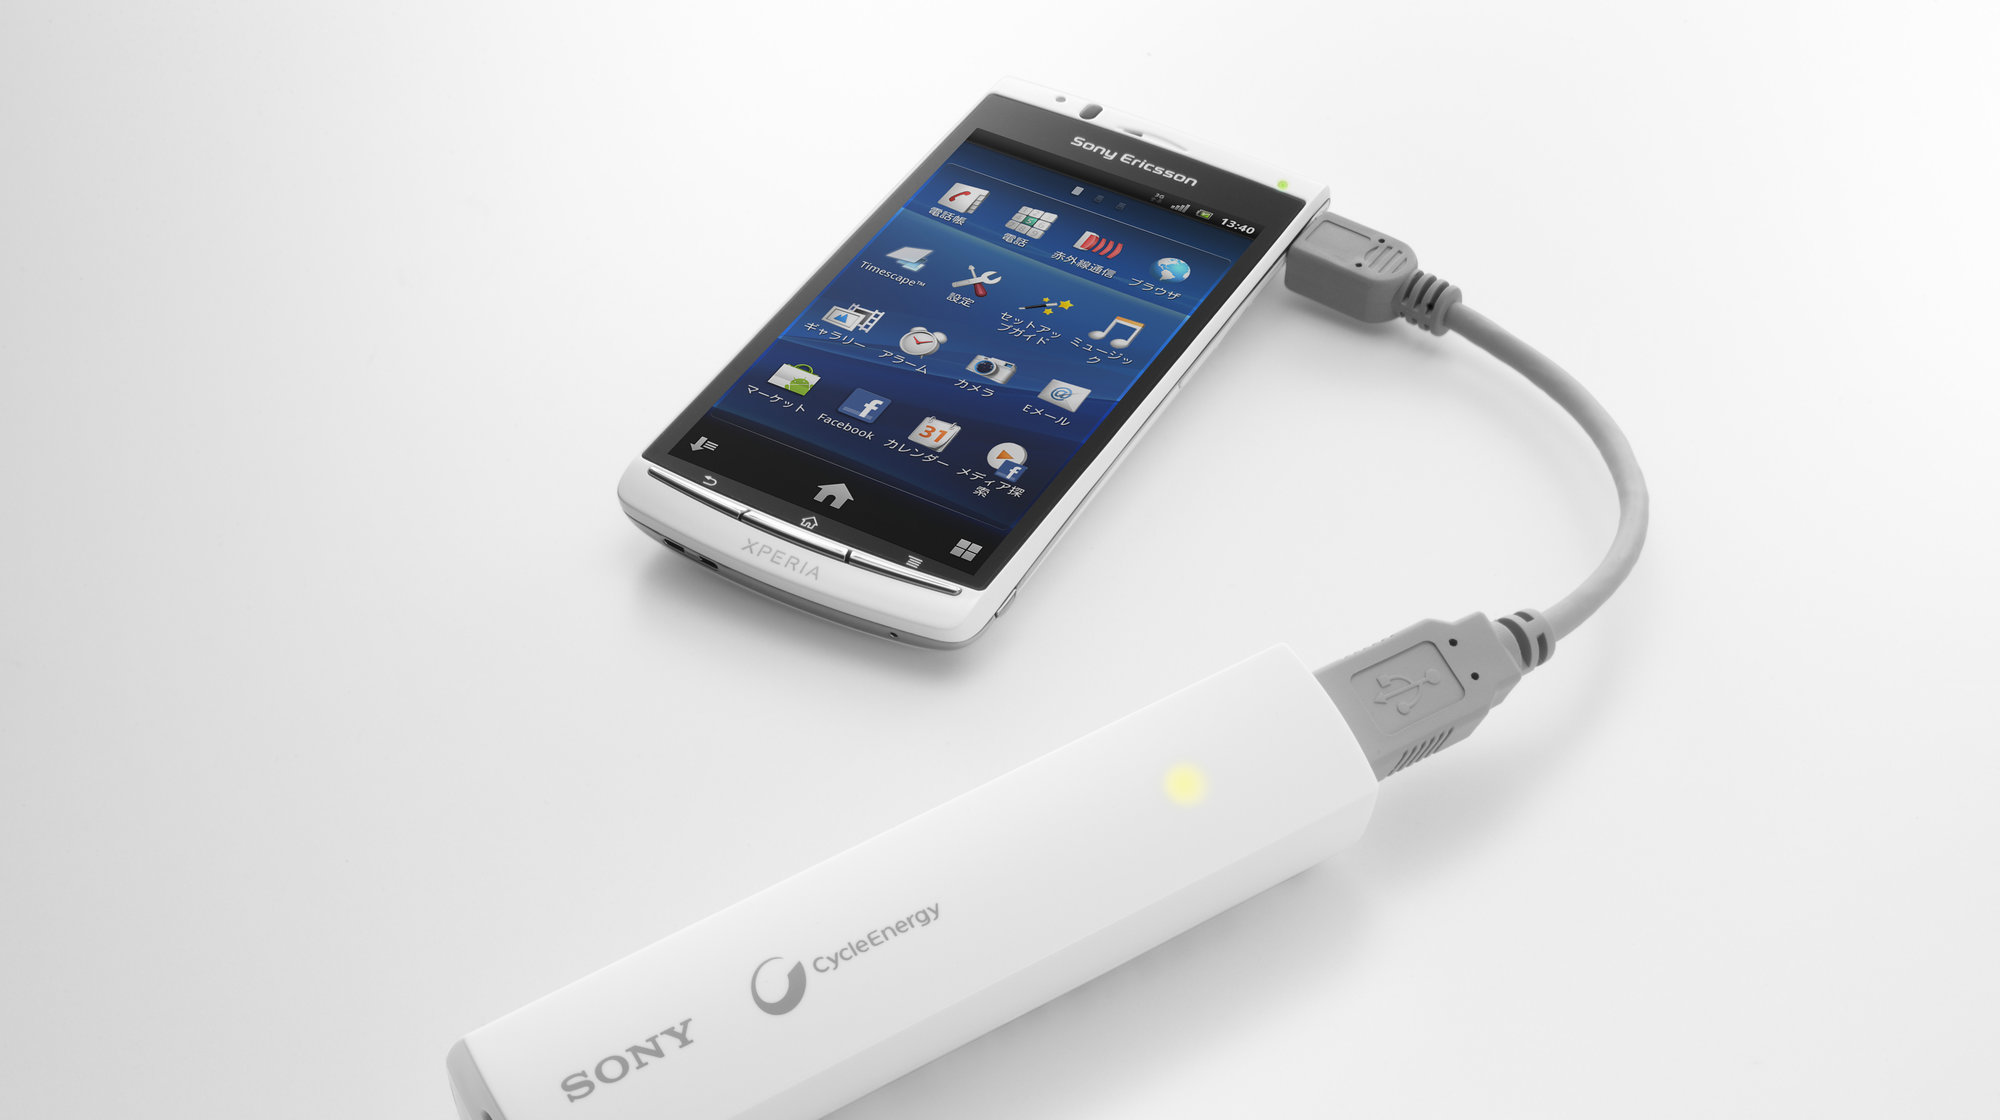 Sonys oppladbare lader CP-ELS fungerer med så godt som alle telefoner. Her med en Sony Ericssons Xperia.